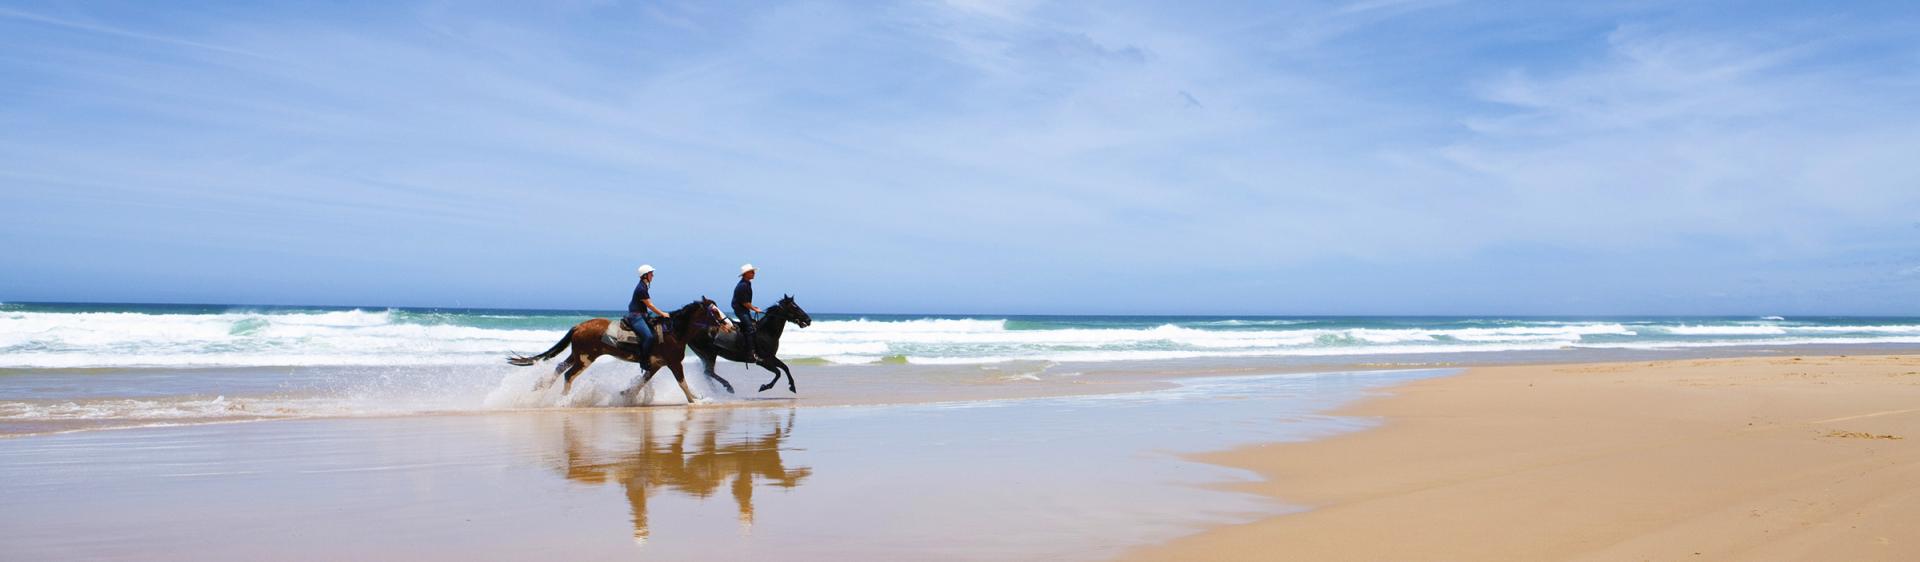 해변 승마(Beach Horse Riding), 포트 스티븐스